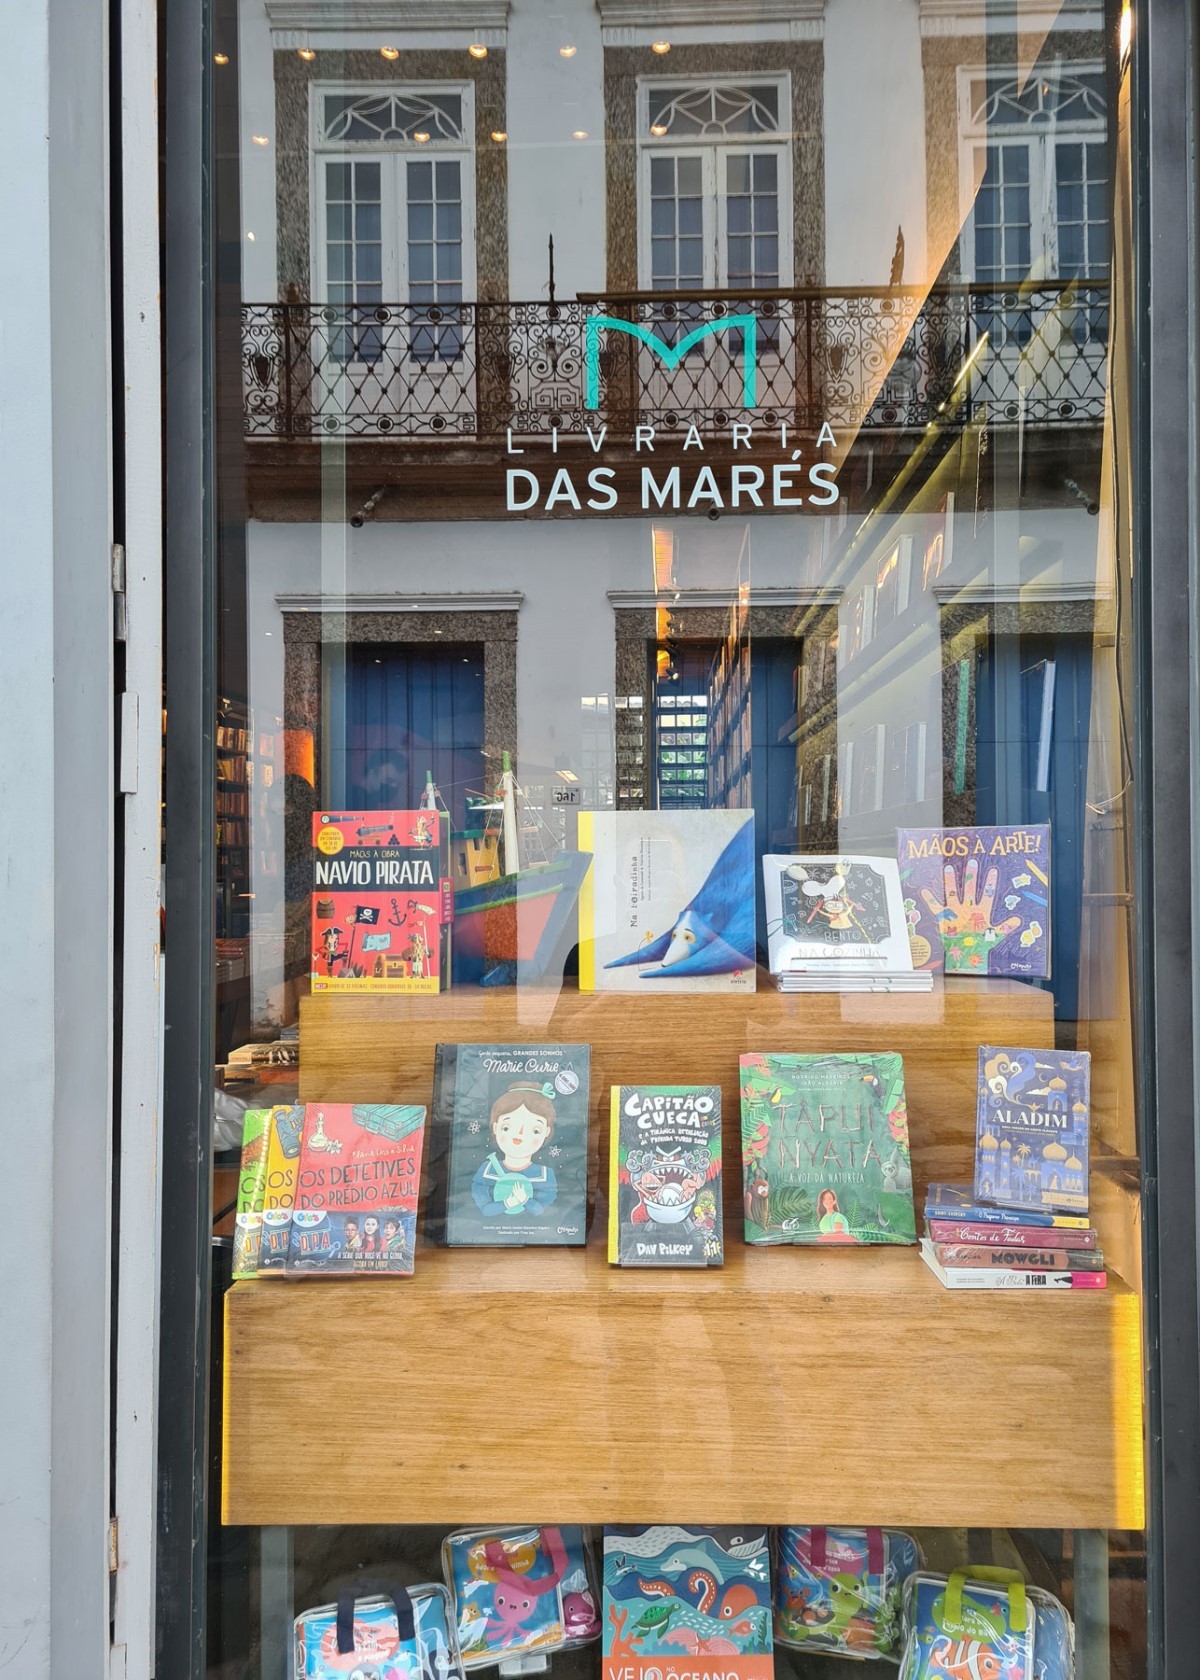 Retrato da fachada da Livraria das Marés, com o reflexo do Centro Histórico de Paraty (MG) (Foto: @marcelooseas)